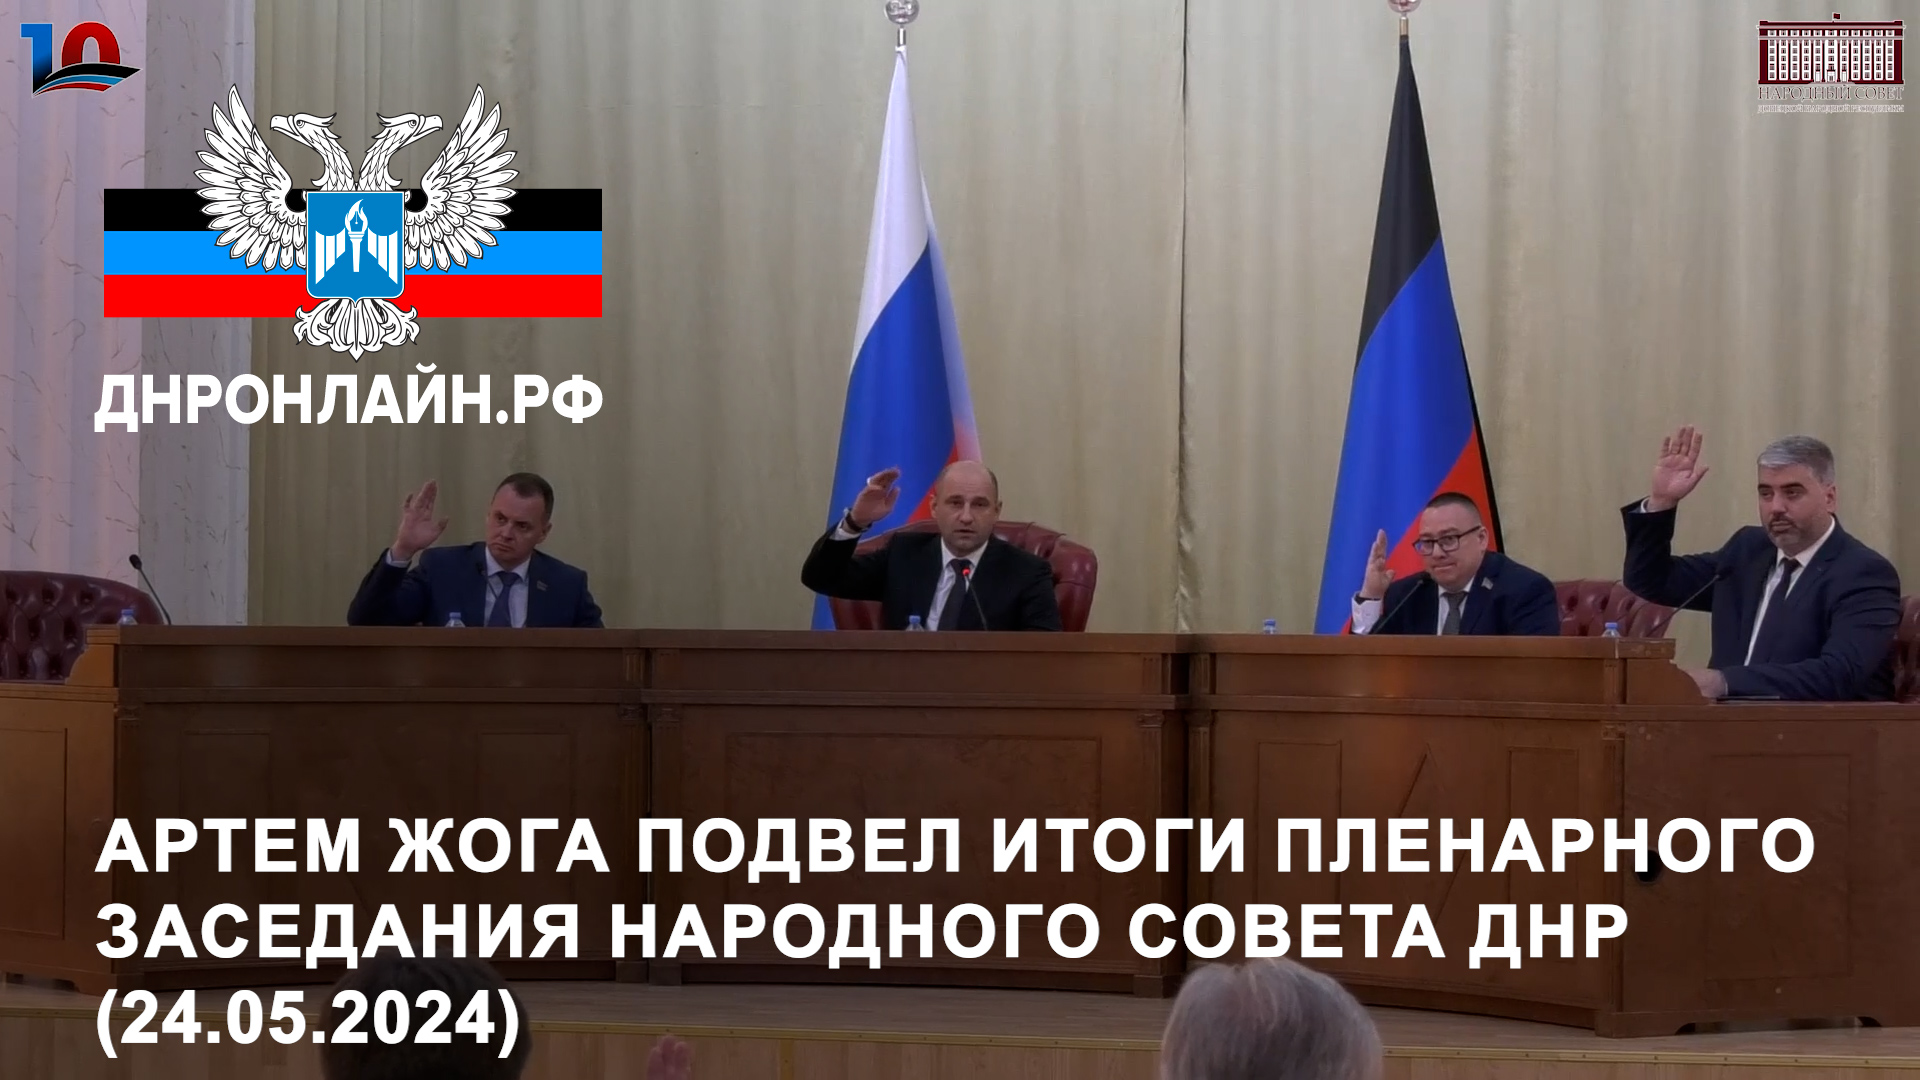 Артем Жога подвел итоги пленарного заседания Народного Совета ДНР (24.05.2024)